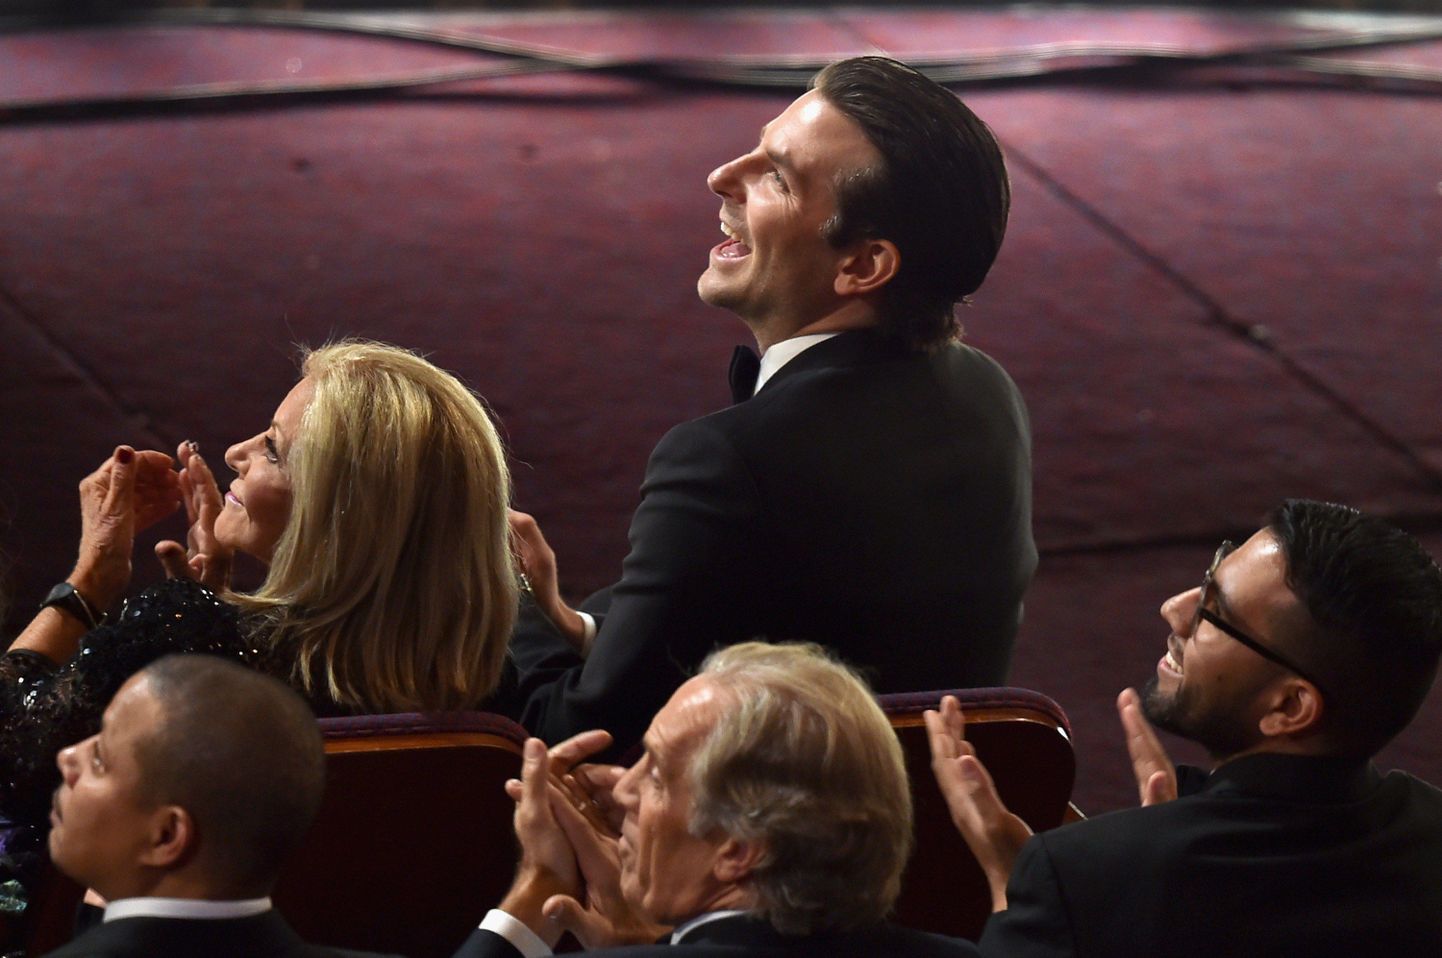 Läinud pühapäeva õhtul ihkas «Ameerika snaiperi» nimekangelane ja produtsent Bradley Cooper vastu võtta Oscari parima meespeaosa eest, kuid seekord viie nominendi hulka jõudnu rahulduma võitjatele aplodeerimisega.